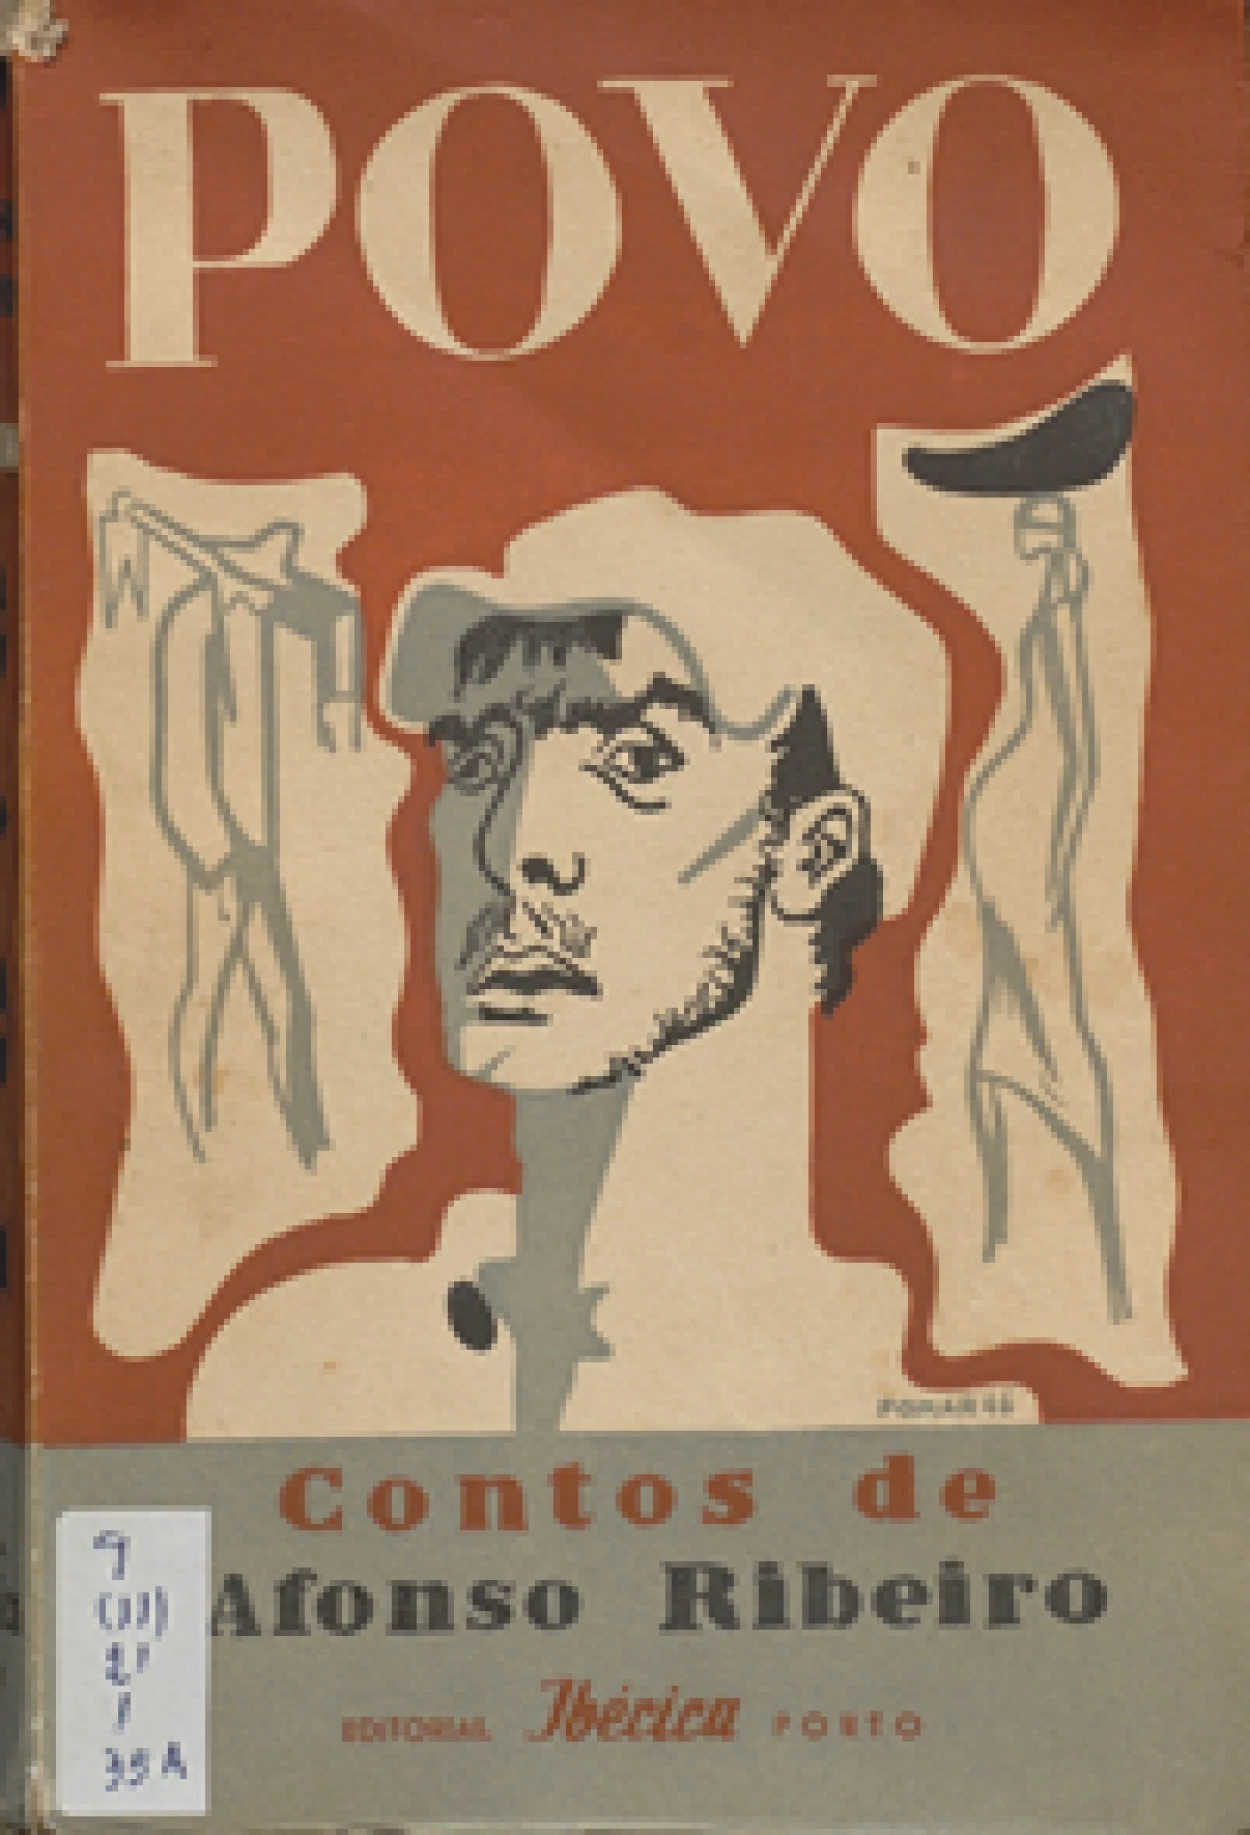 Afonso Ribeiro, 1911–1993
Povo : contos / capa de Júlio Pomar.
Porto : Ibérica, imp.1947.